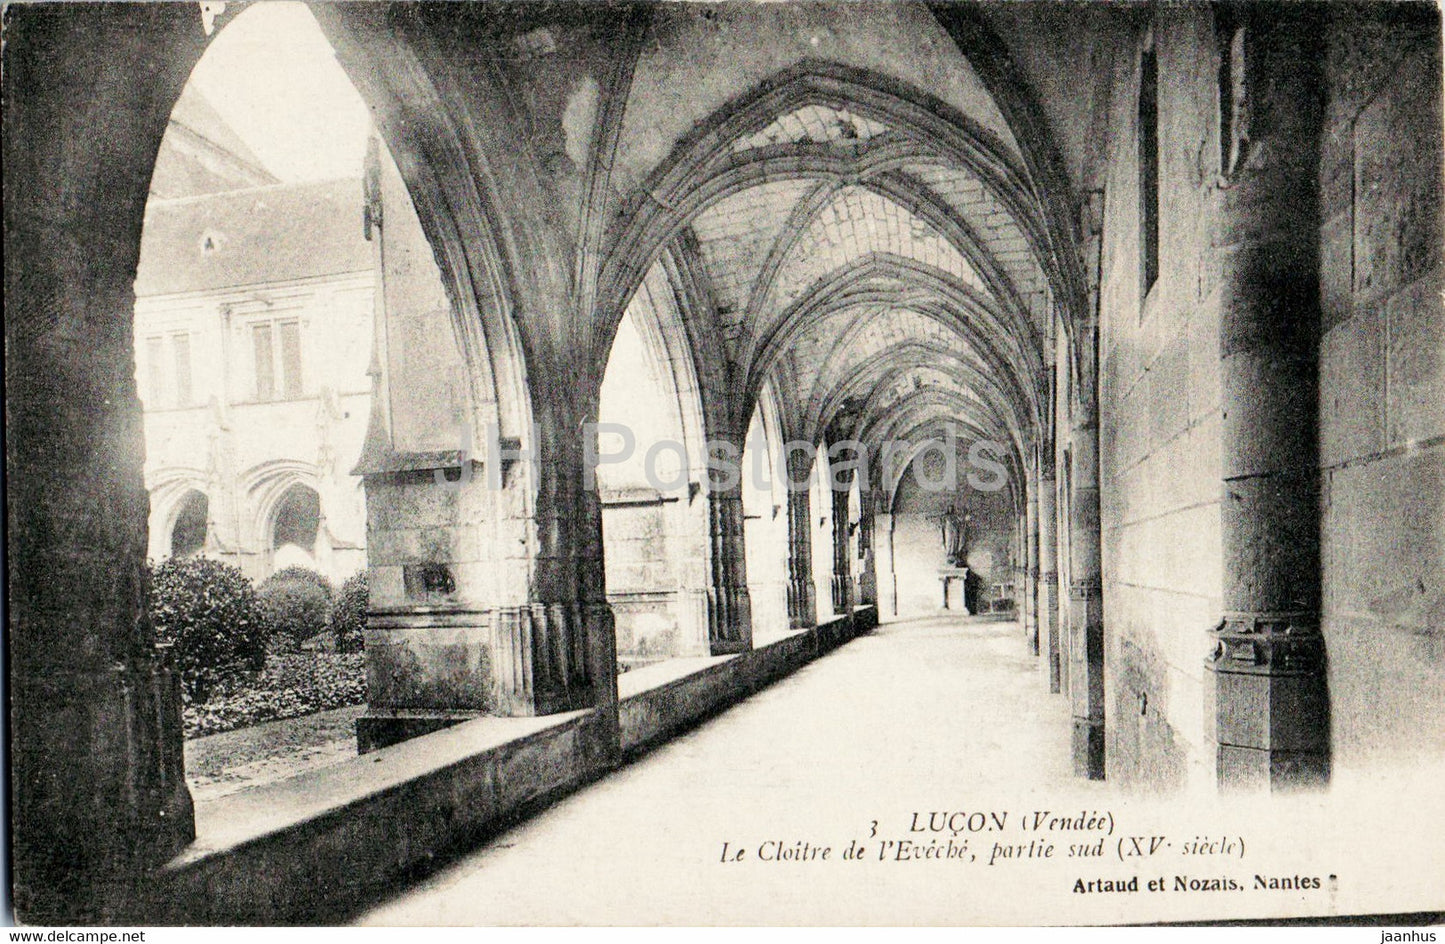 Lucon - Le Cloitre de l'Eveche - partie Sud - 3 - old postcard - France - unused - JH Postcards